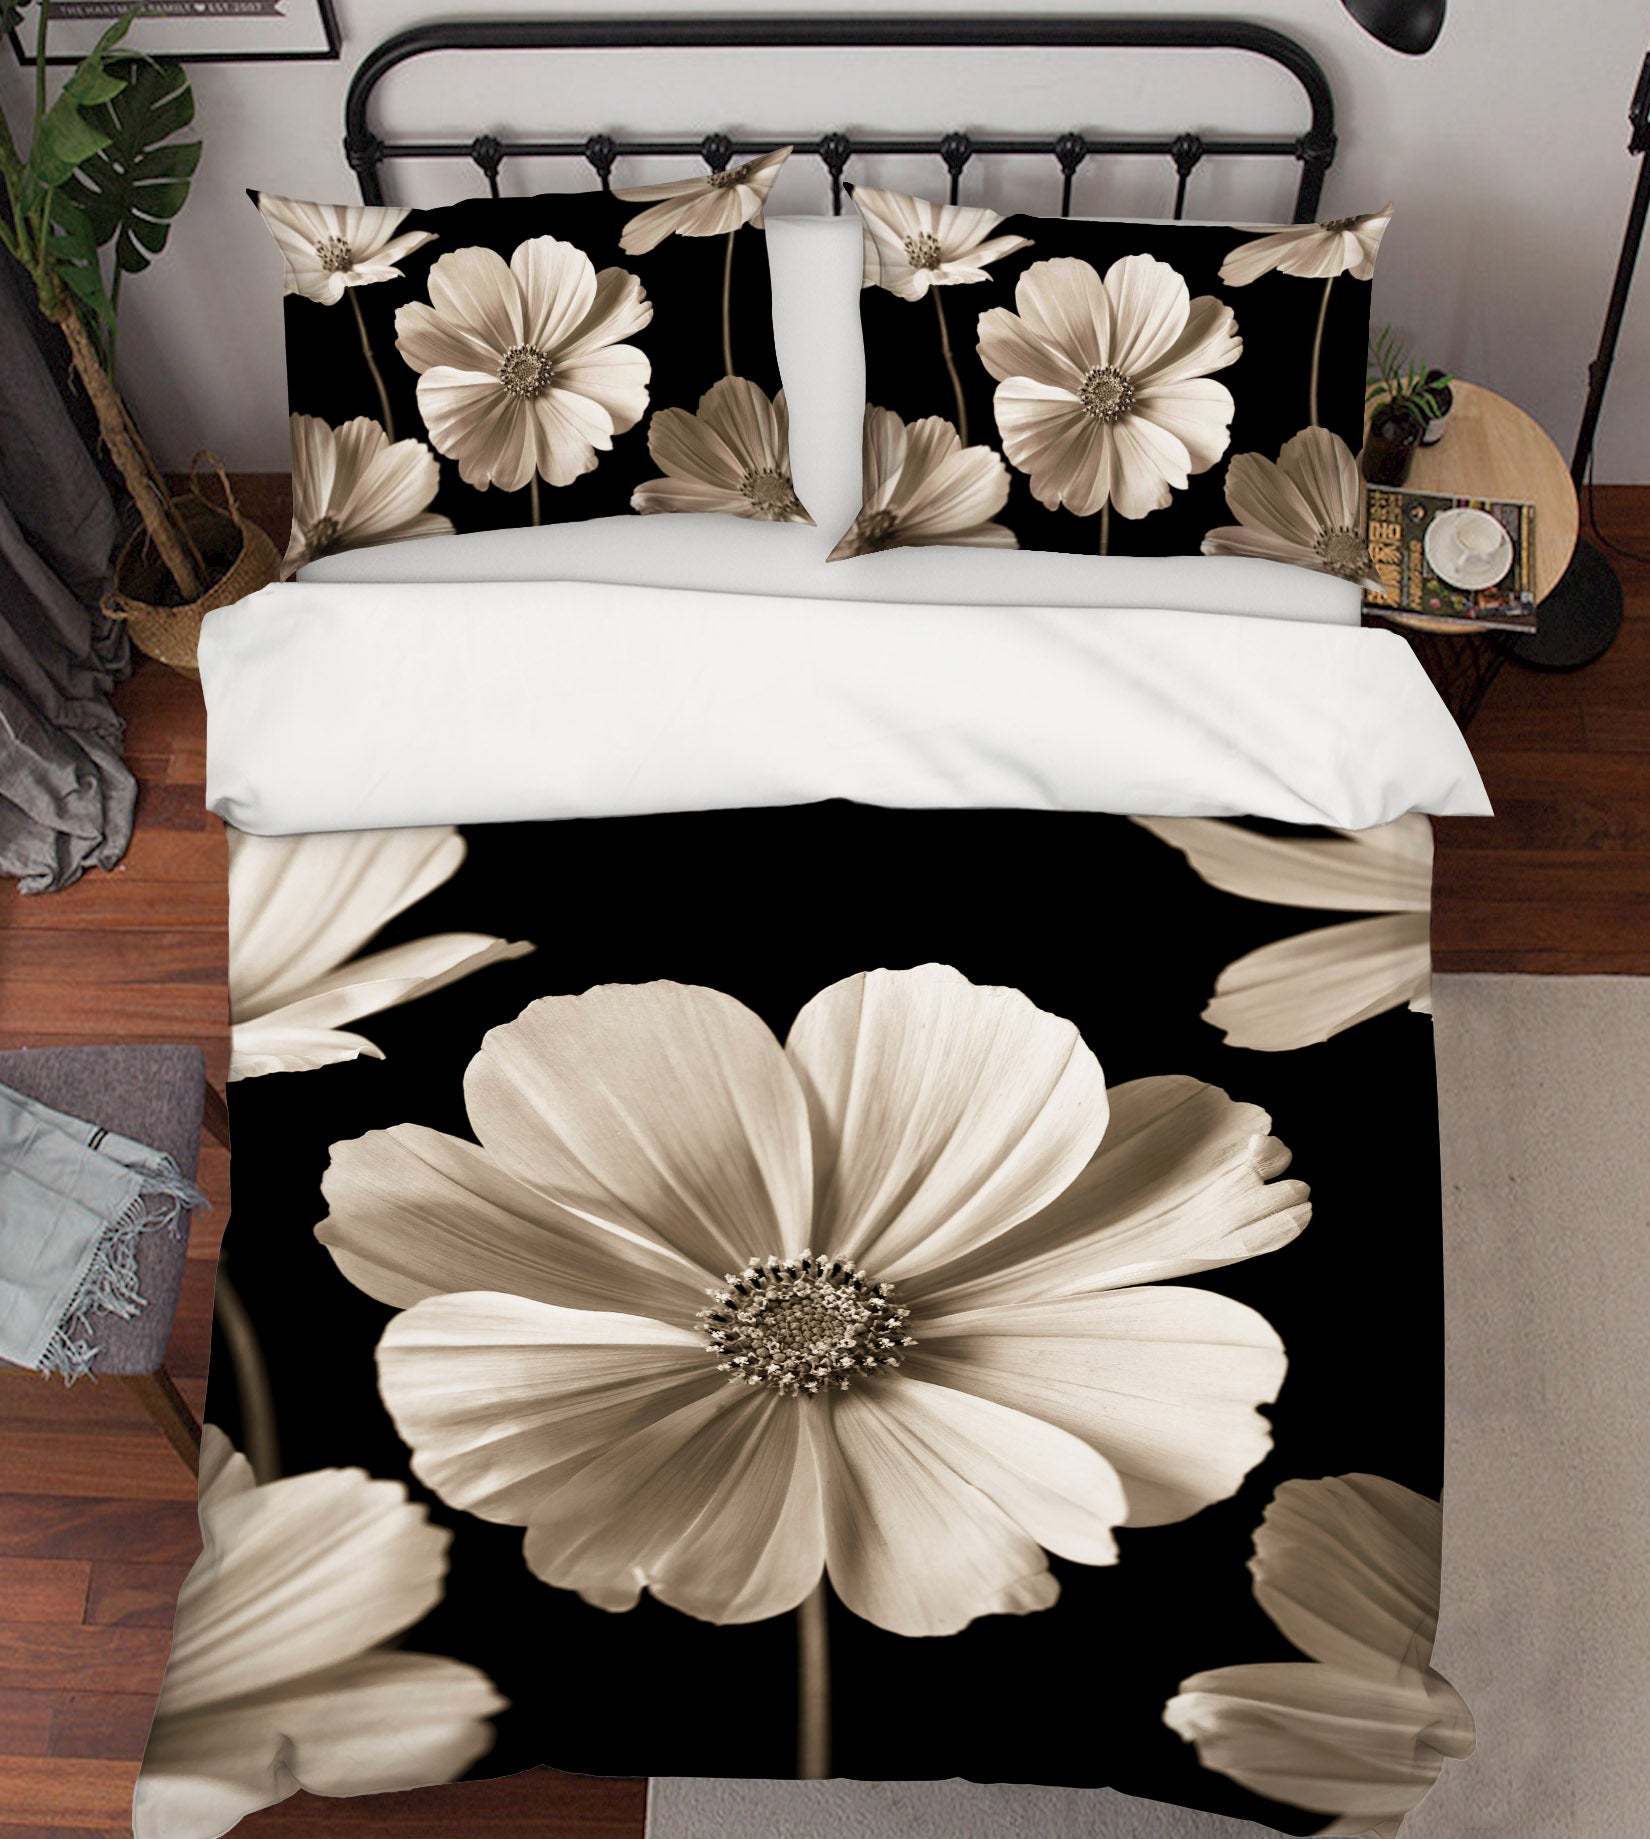 3D White Flowers 7107 Assaf Frank Bedding Bed Pillowcases Quilt Cover Duvet Cover